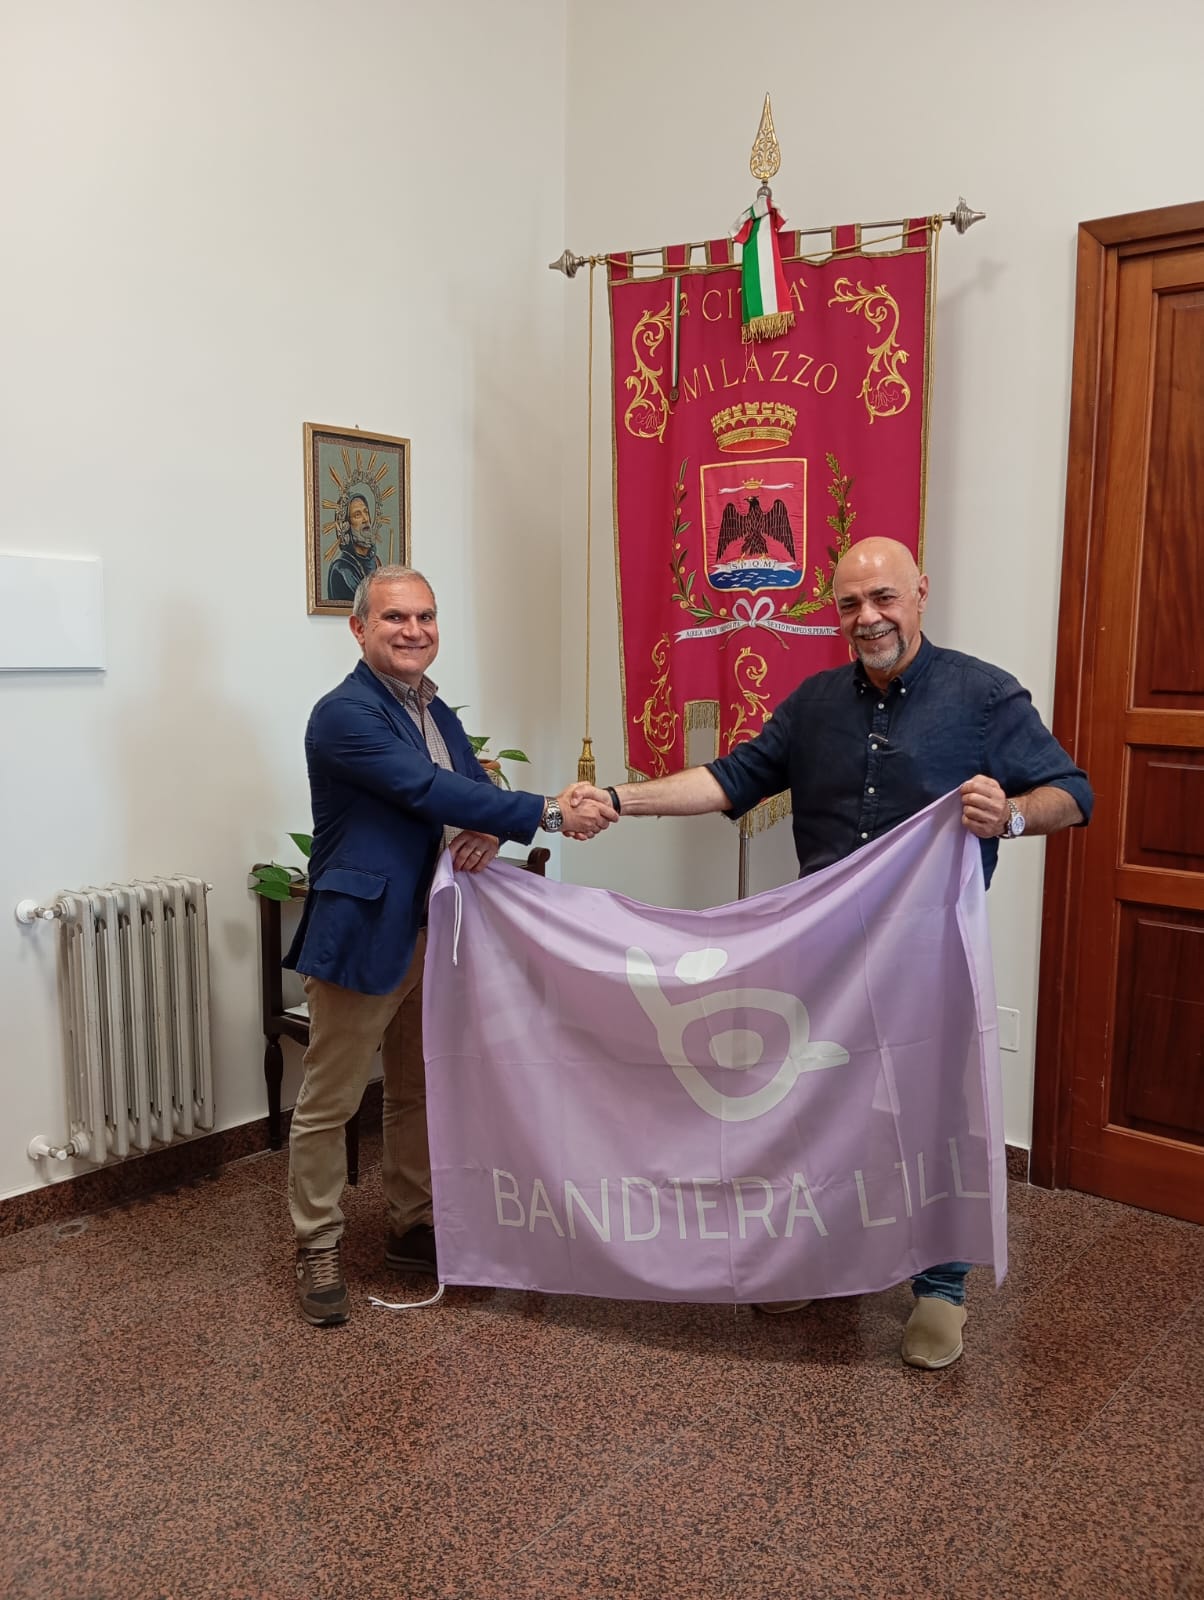 Il presidente Roberto Bazzano posa con il sindaco di Milazzo davanti al gonfalone della città. Con una mano tengono la bandiera, con l'altra si dannò una stretta di mano.